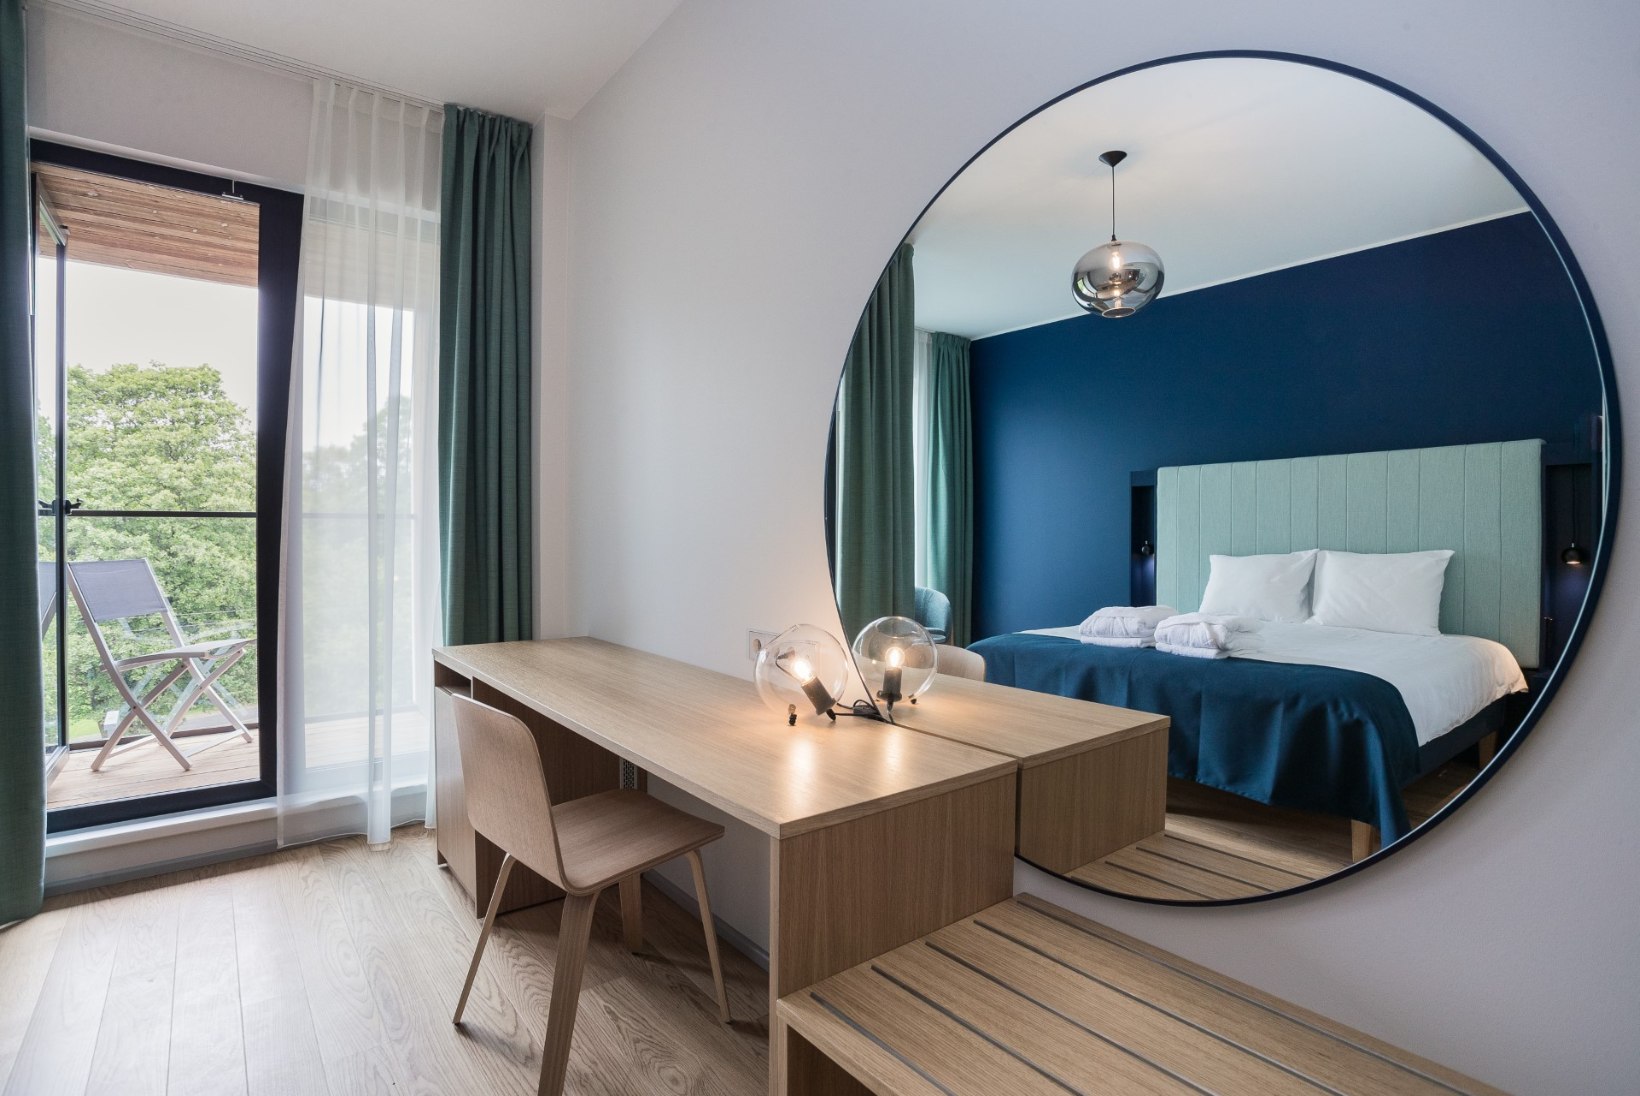 GALERII | Pärnu saab koos suvepealinna tiitliga juurde spaahotelli koos 150 voodikohaga